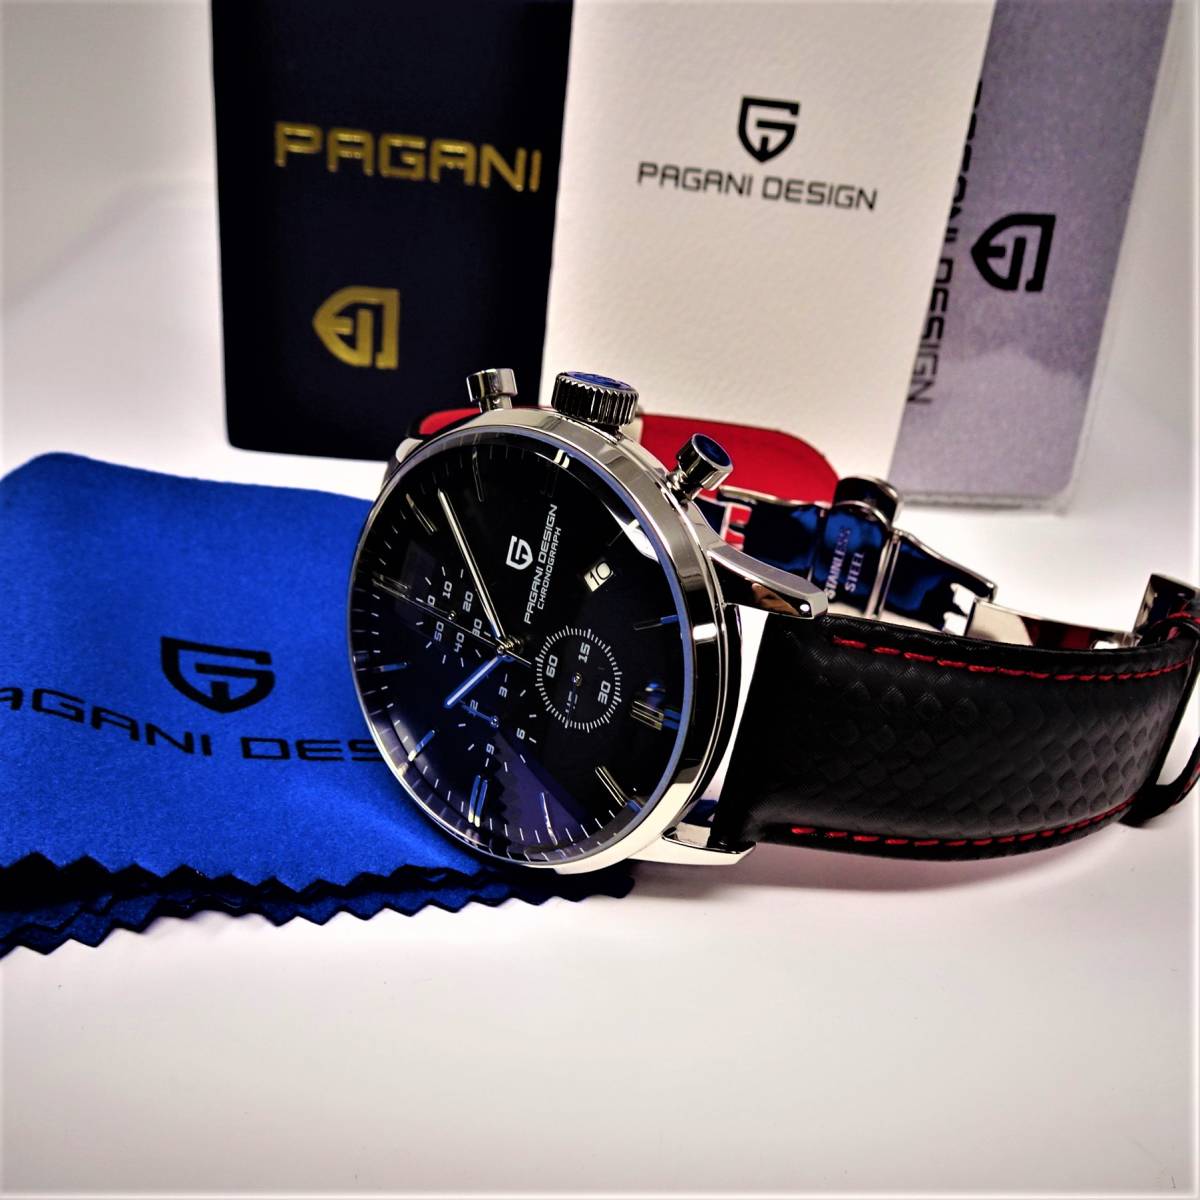 新品・パガーニ腕時計メンズ・VK67クロノグラフクォーツ式スモールセコンドビジネスモデル腕時計 ・本革ベルト・オマージュ・PD-2720_画像10